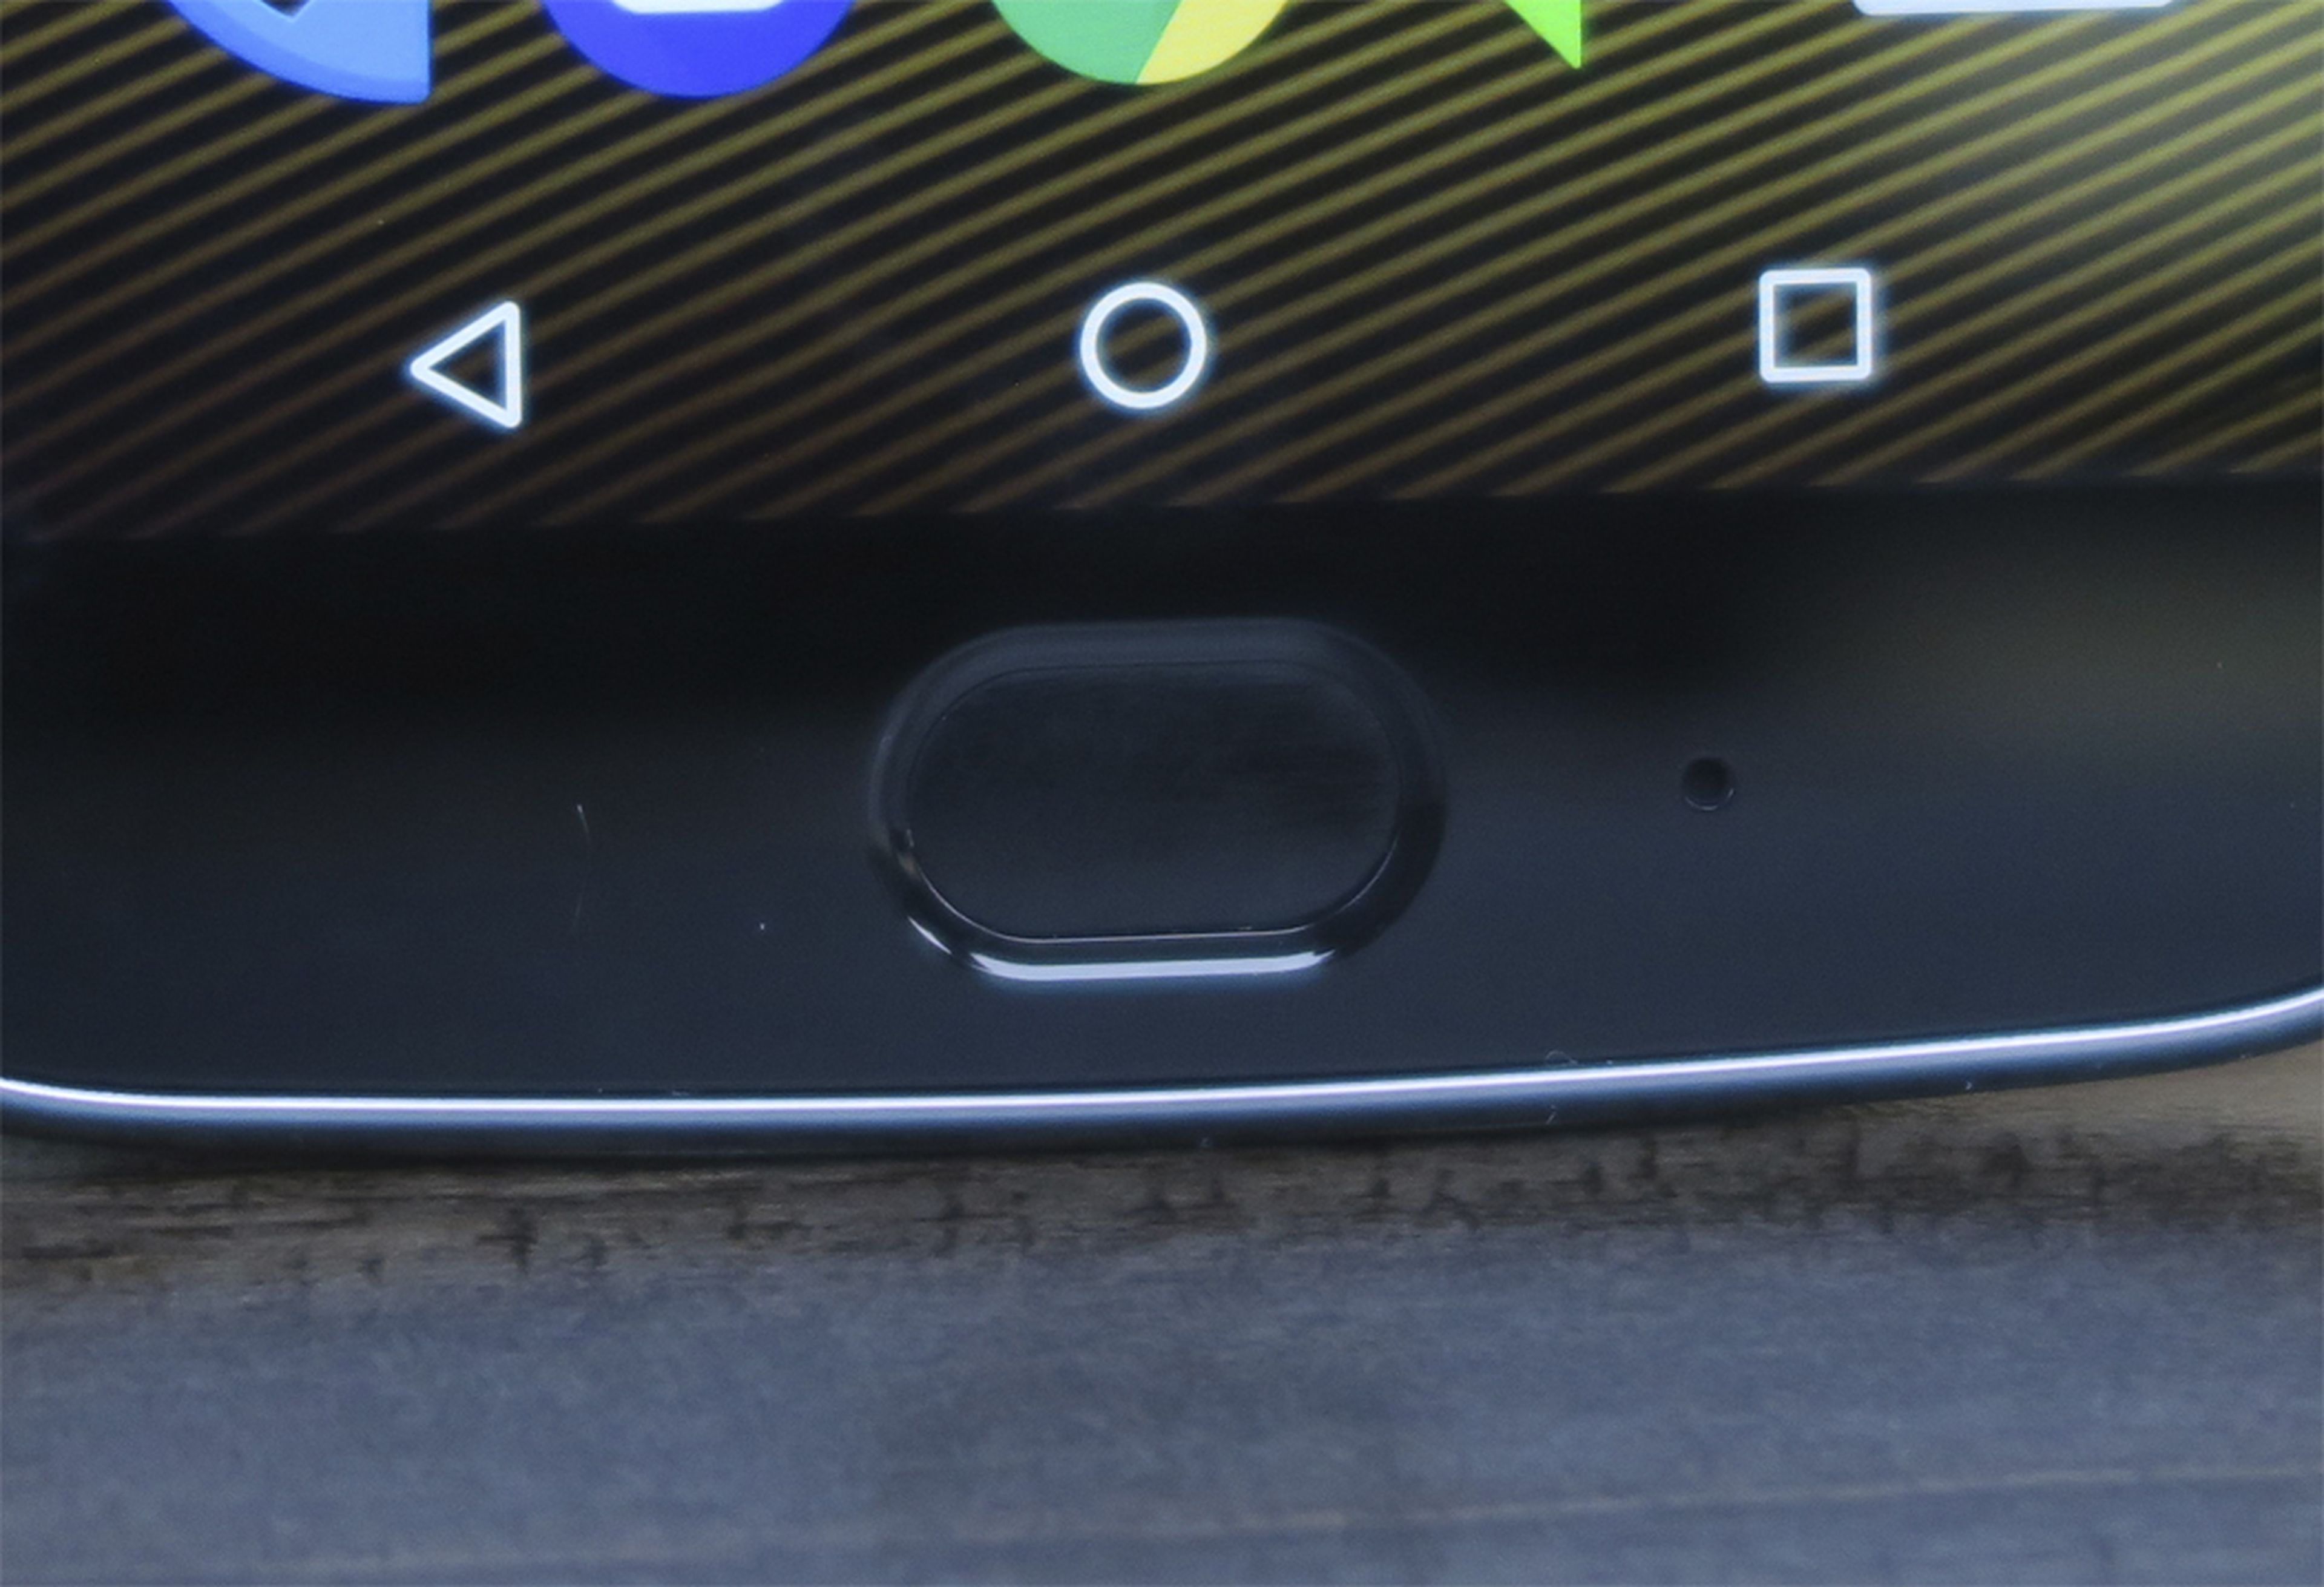 A la derecha del lector de huellas hay un orificio, y se trata del micrófono, el cual en el Moto G5 Plus está escondido en la parte inferior del móvil